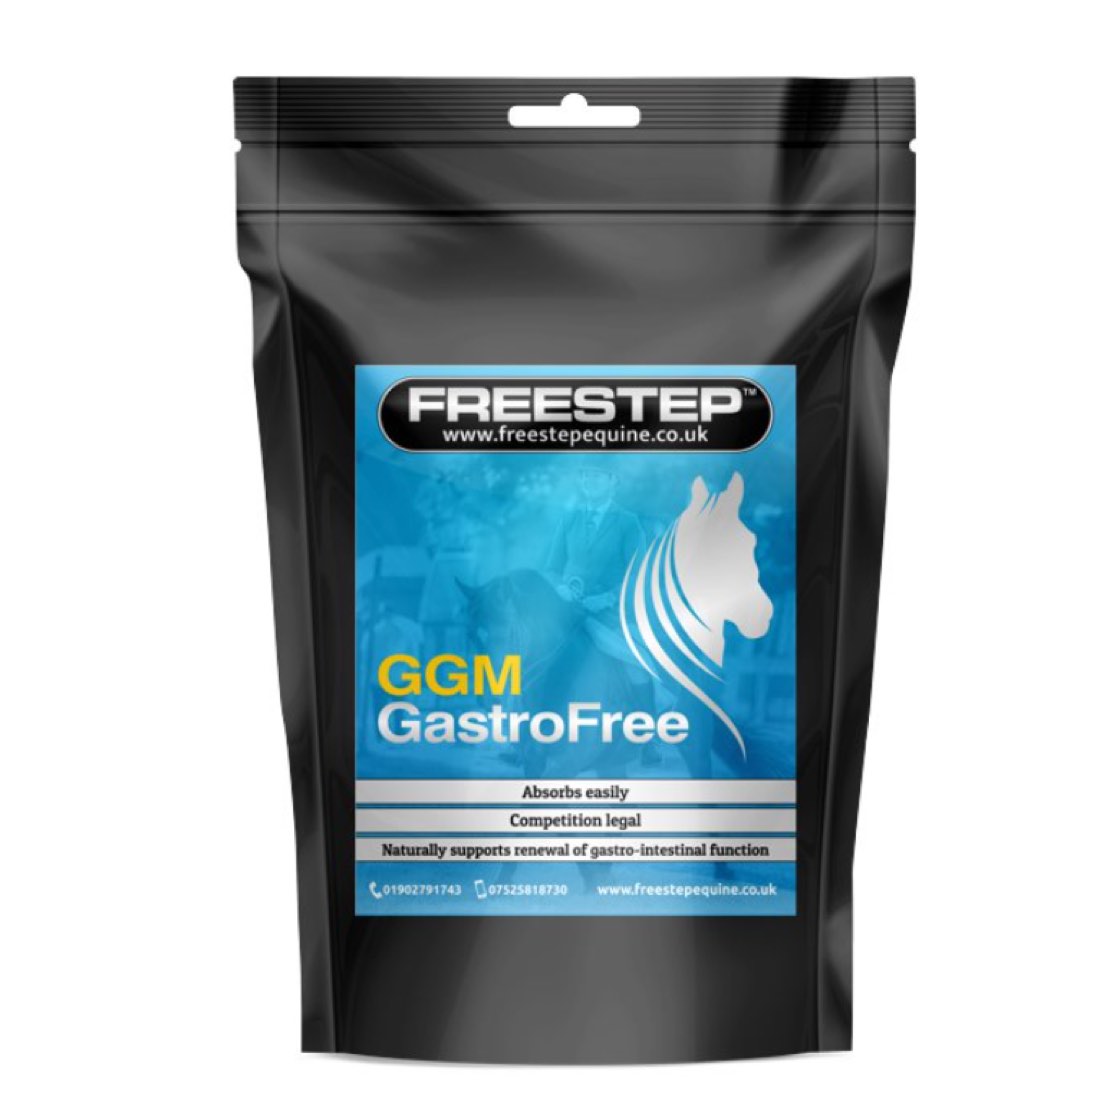 Freestep Gastrofree GGM